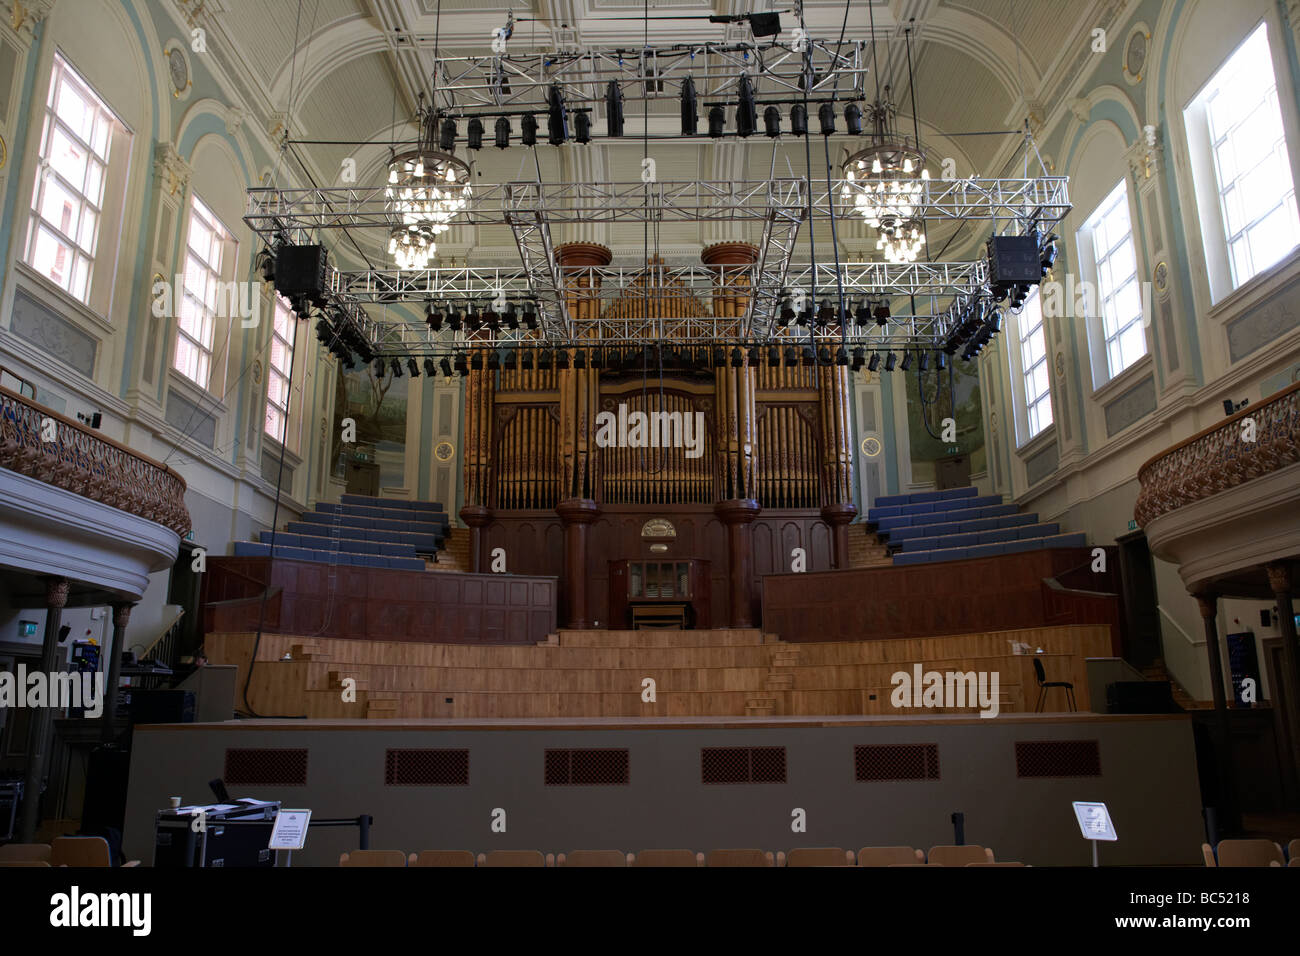 Bühne und Mulholland Organ im Inneren des frisch renovierten Ulster Hall Veranstaltungsort in Belfast Nordirland Vereinigtes Königreich Stockfoto